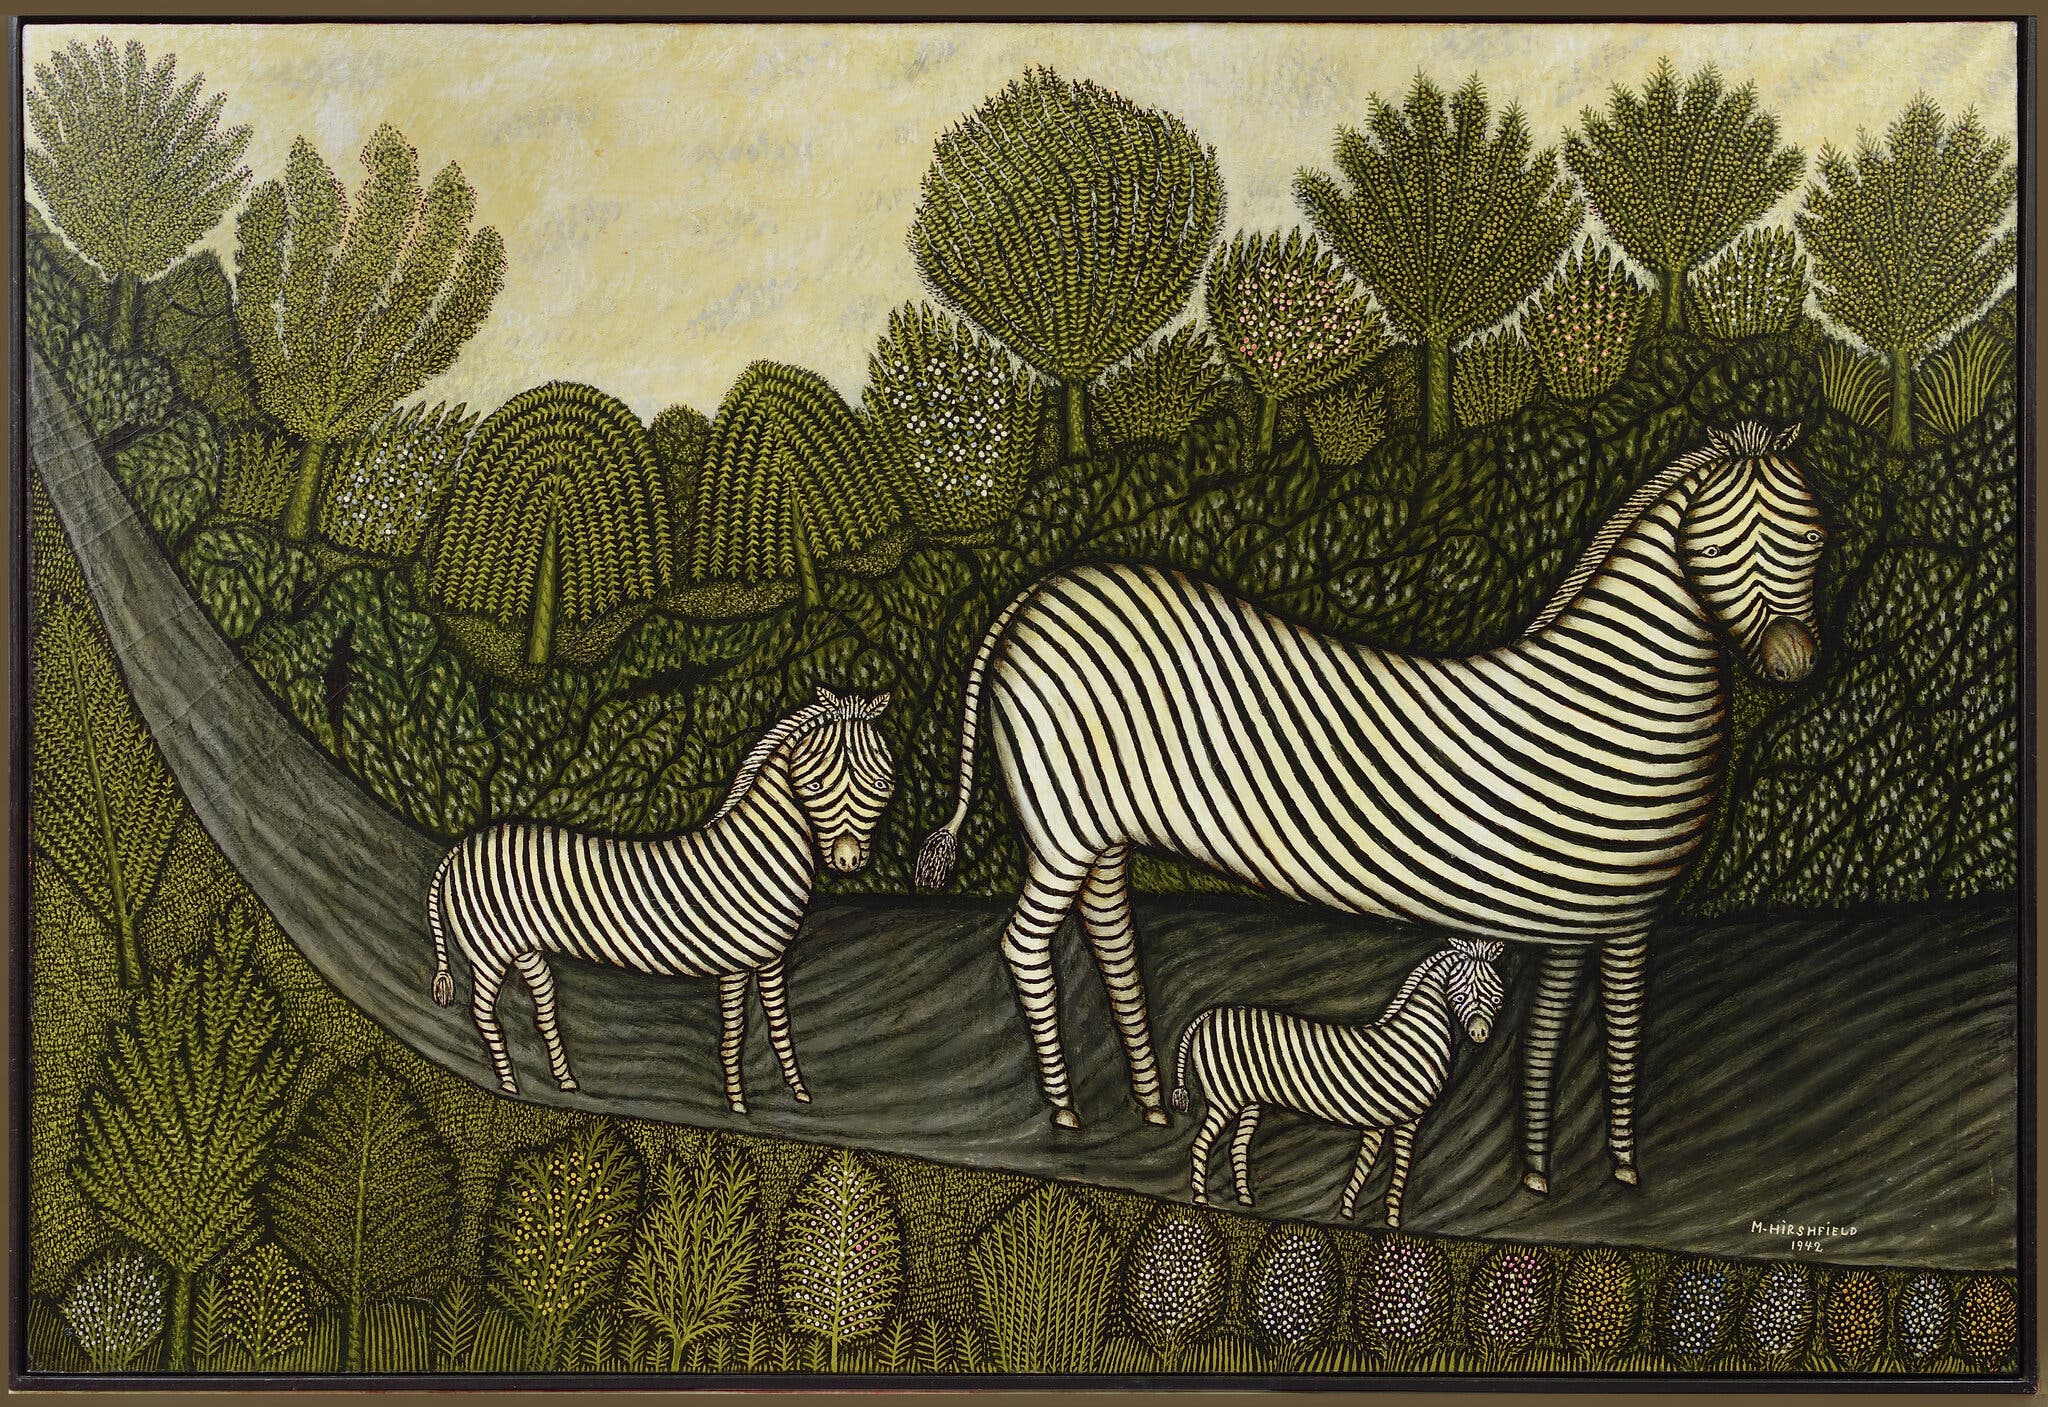 Rodzina zebr by Morris Hirshfield - 1942 